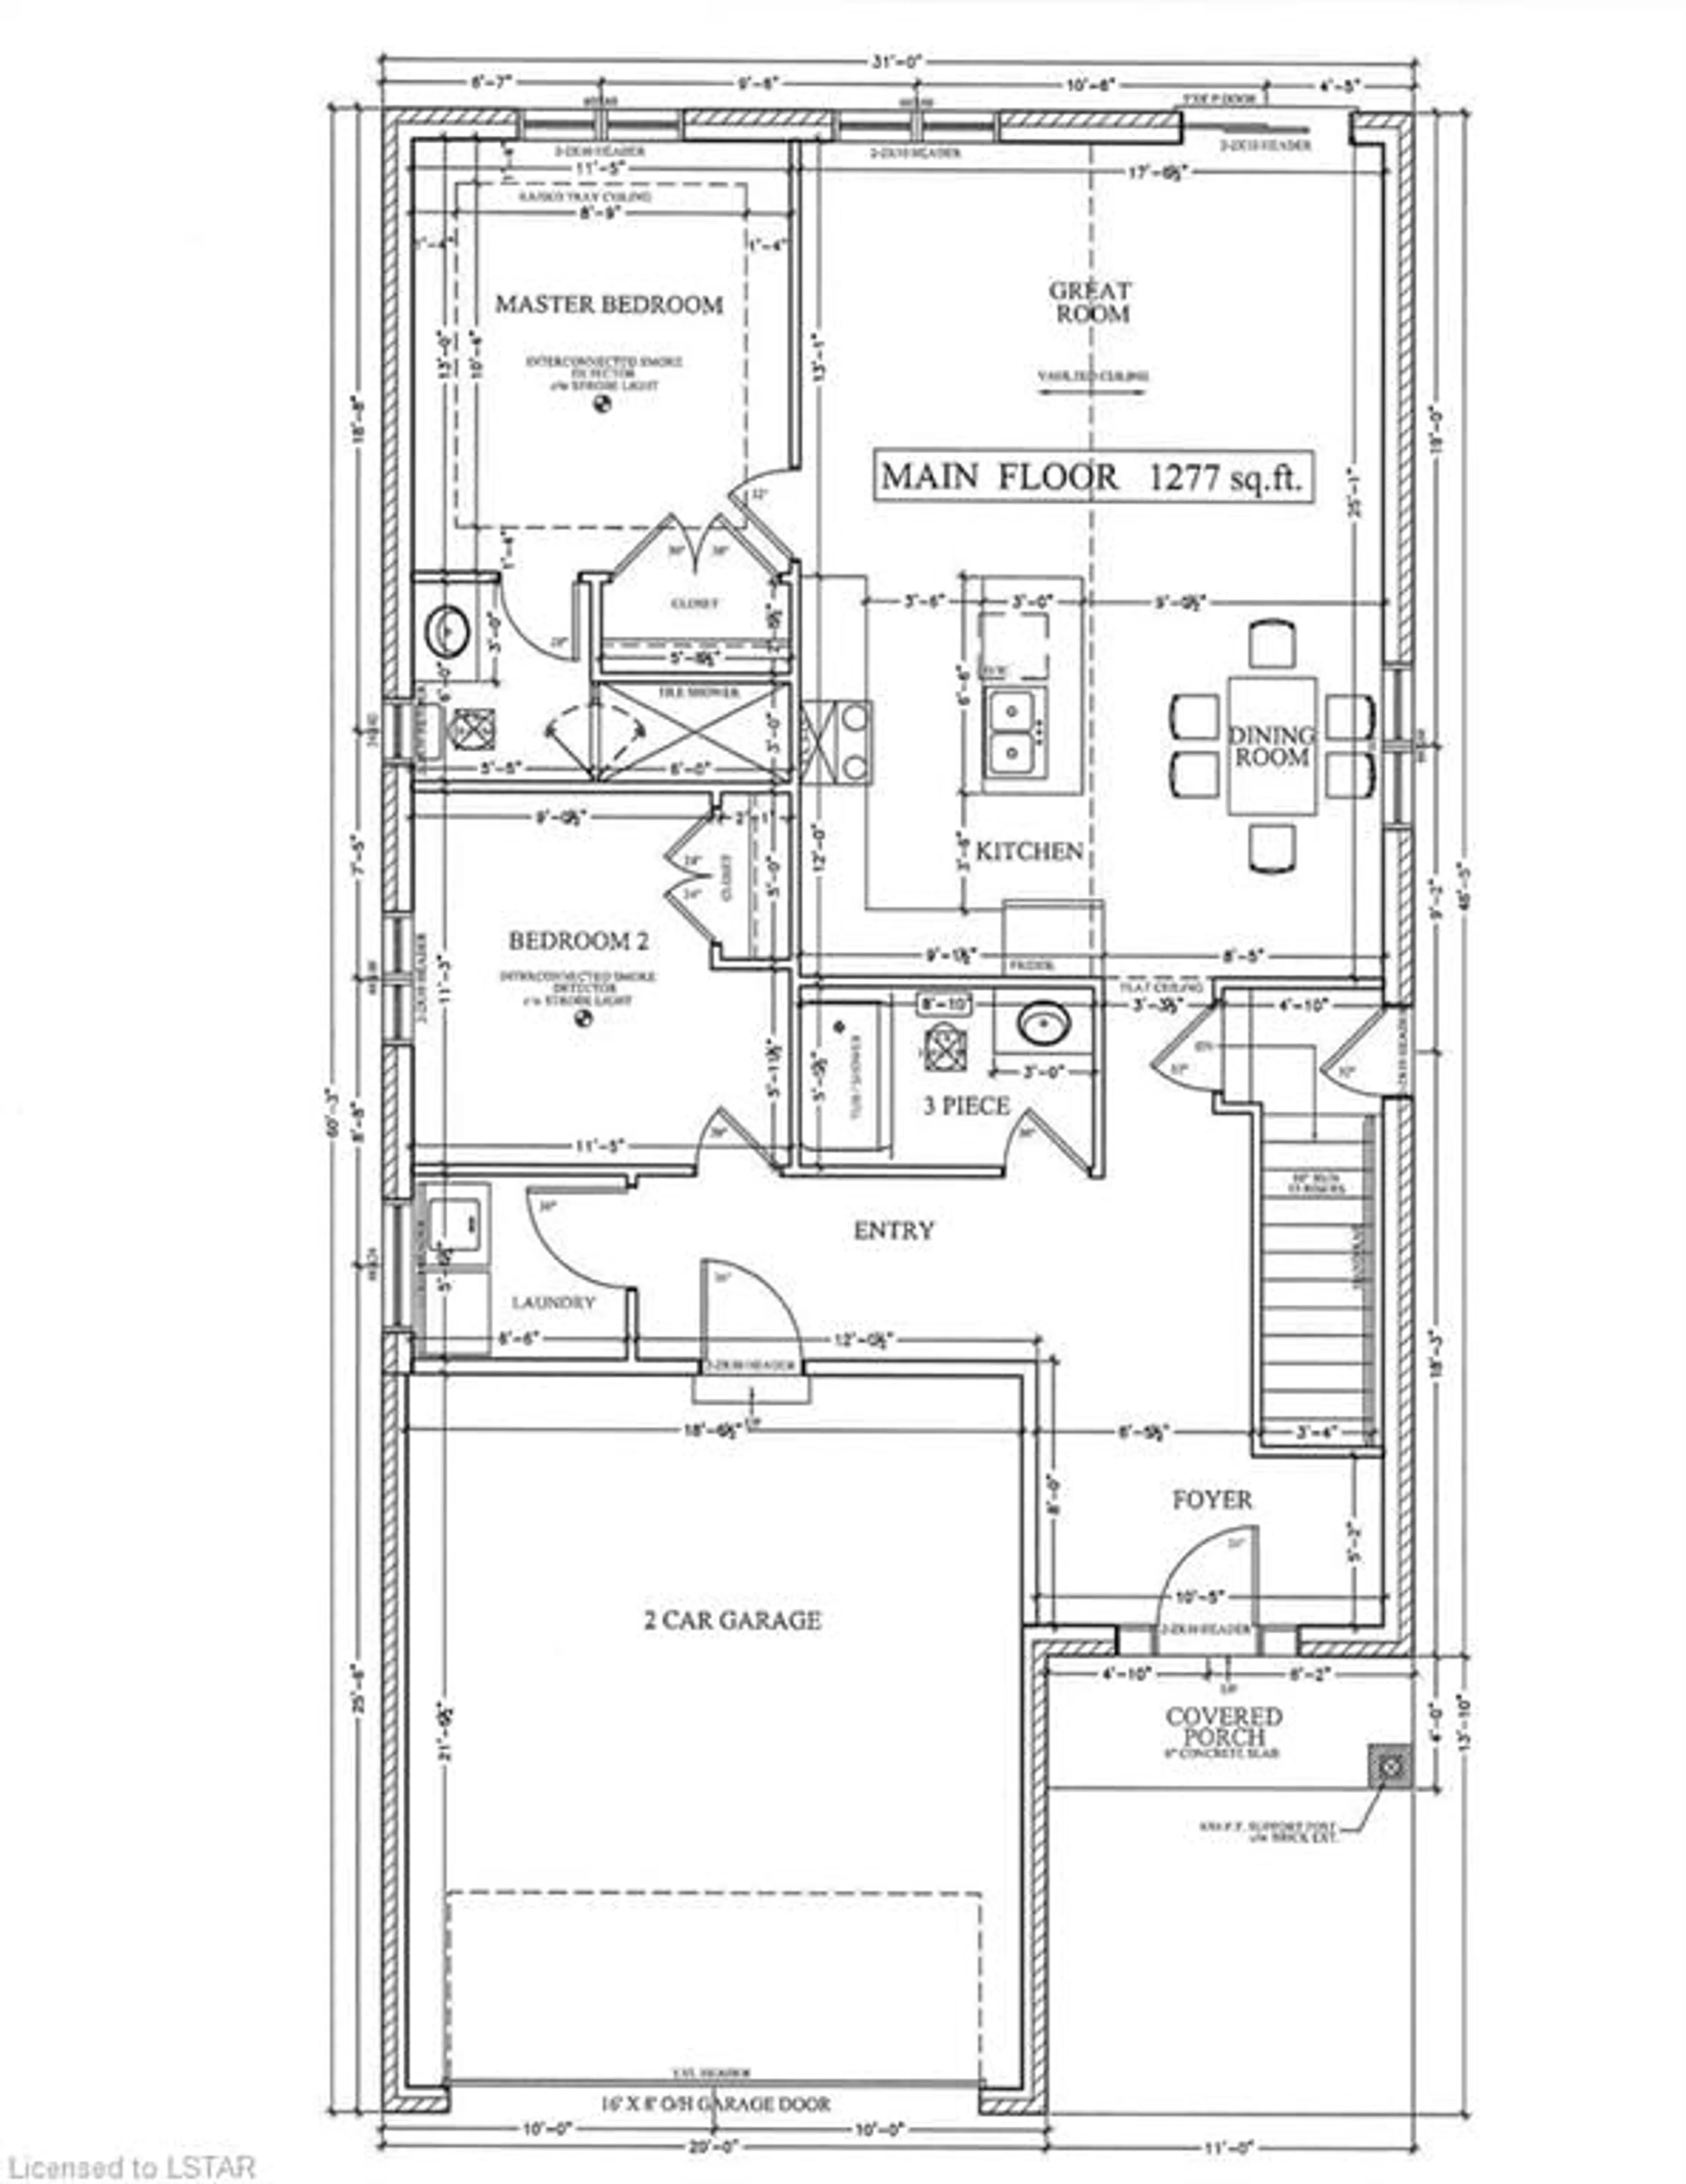 Floor plan for 7966 Fallon Dr #23, Granton Ontario N0M 1V0